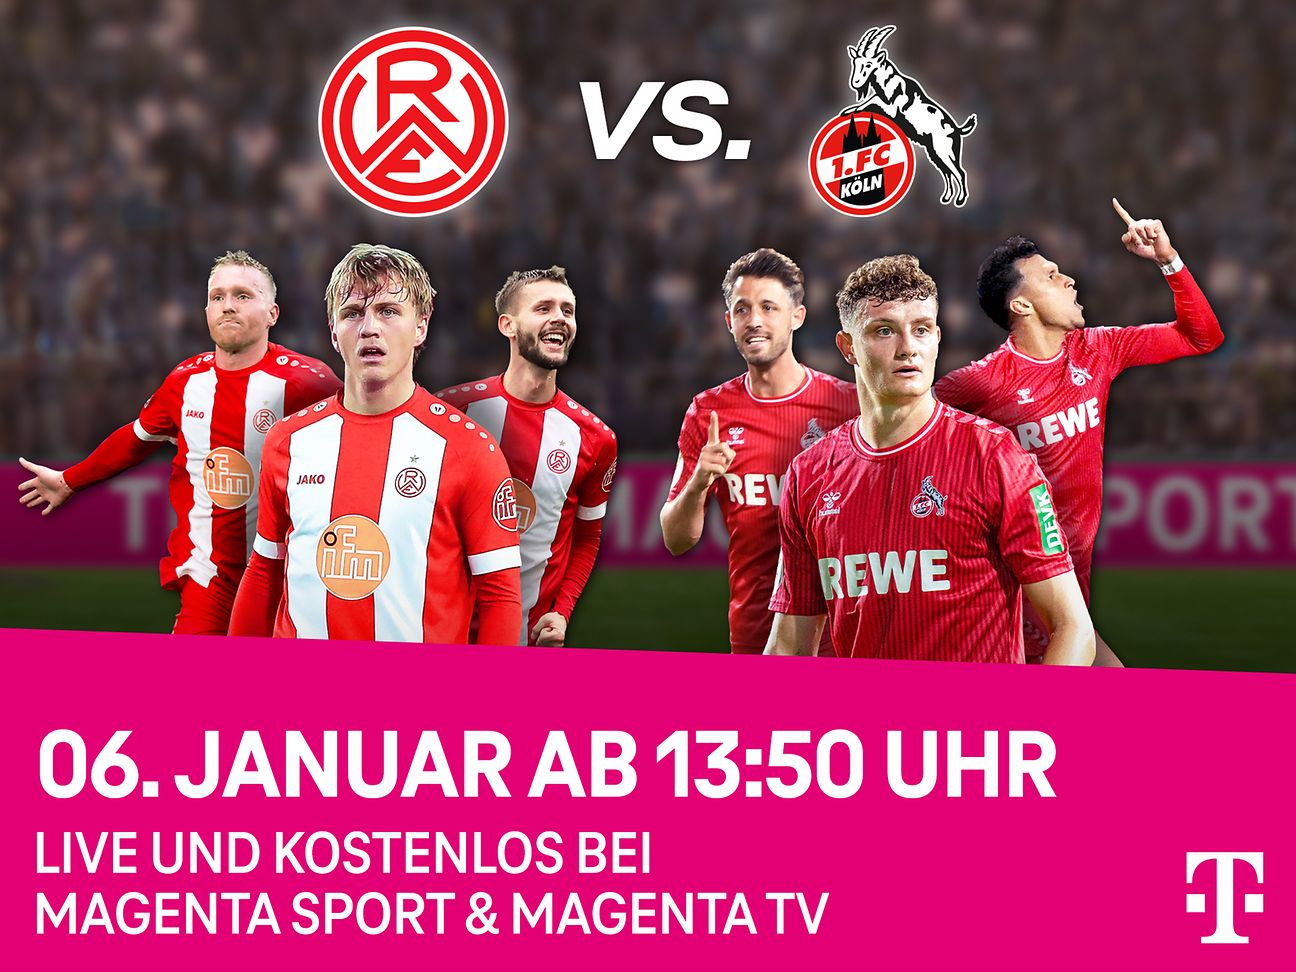 MagentaSport überträgt Testspiel des 1. FC Köln kostenlos für alle